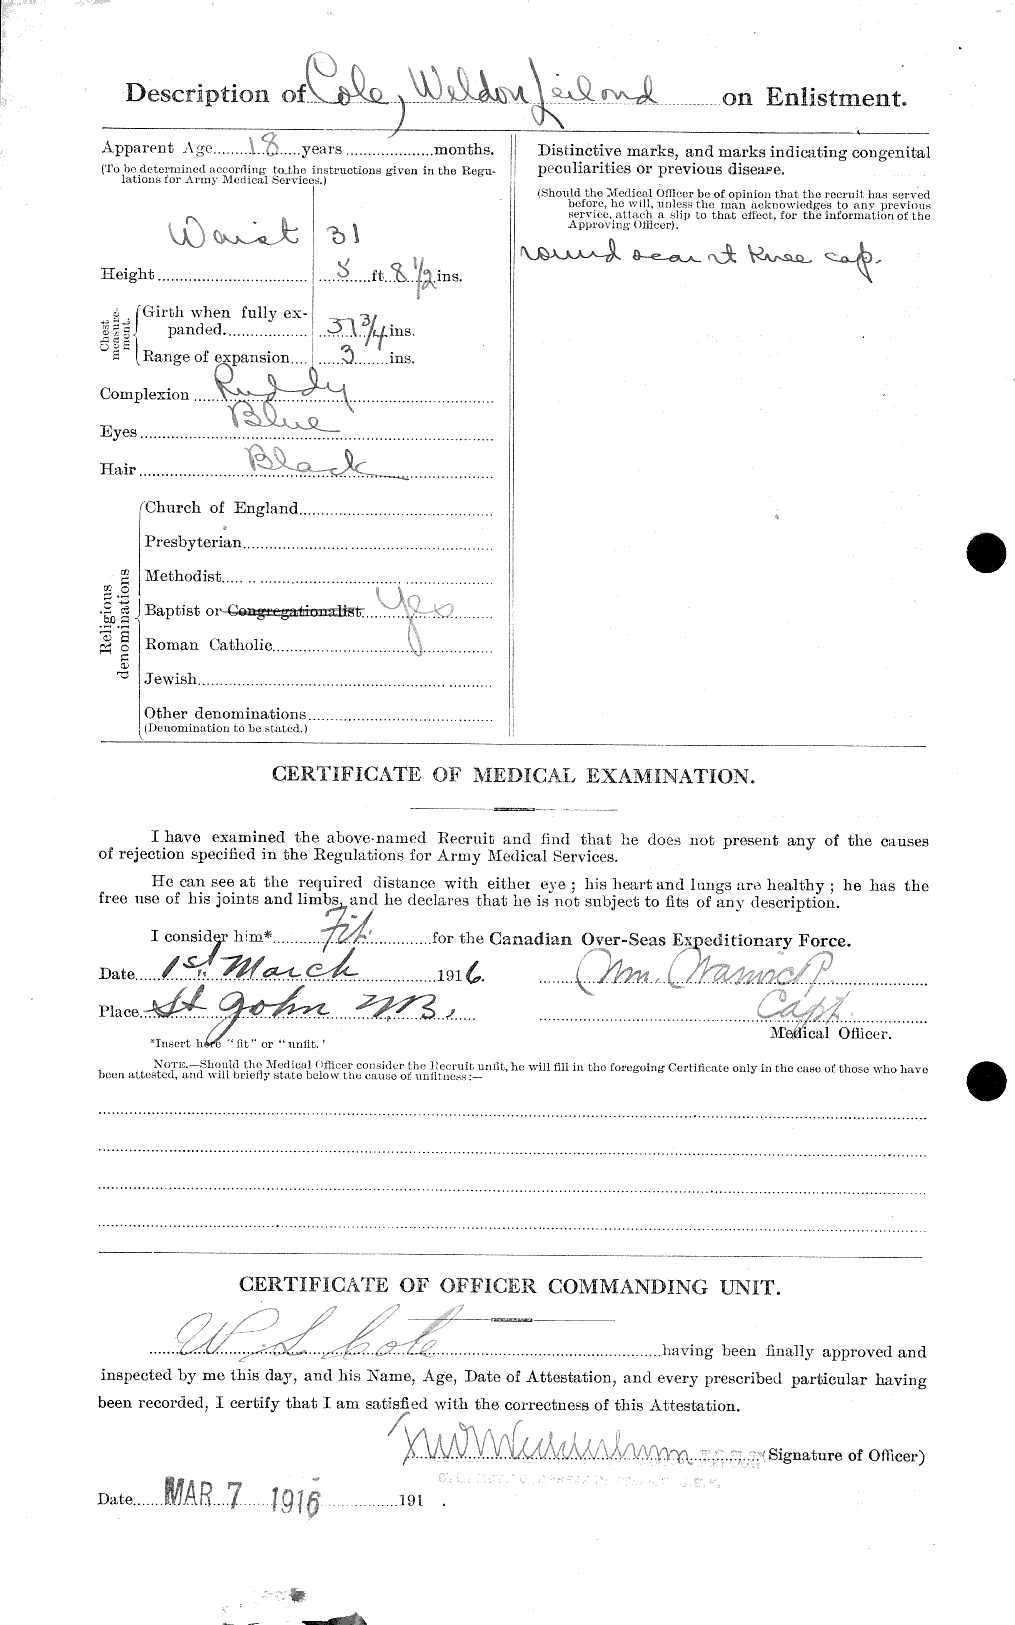 Dossiers du Personnel de la Première Guerre mondiale - CEC 027980b